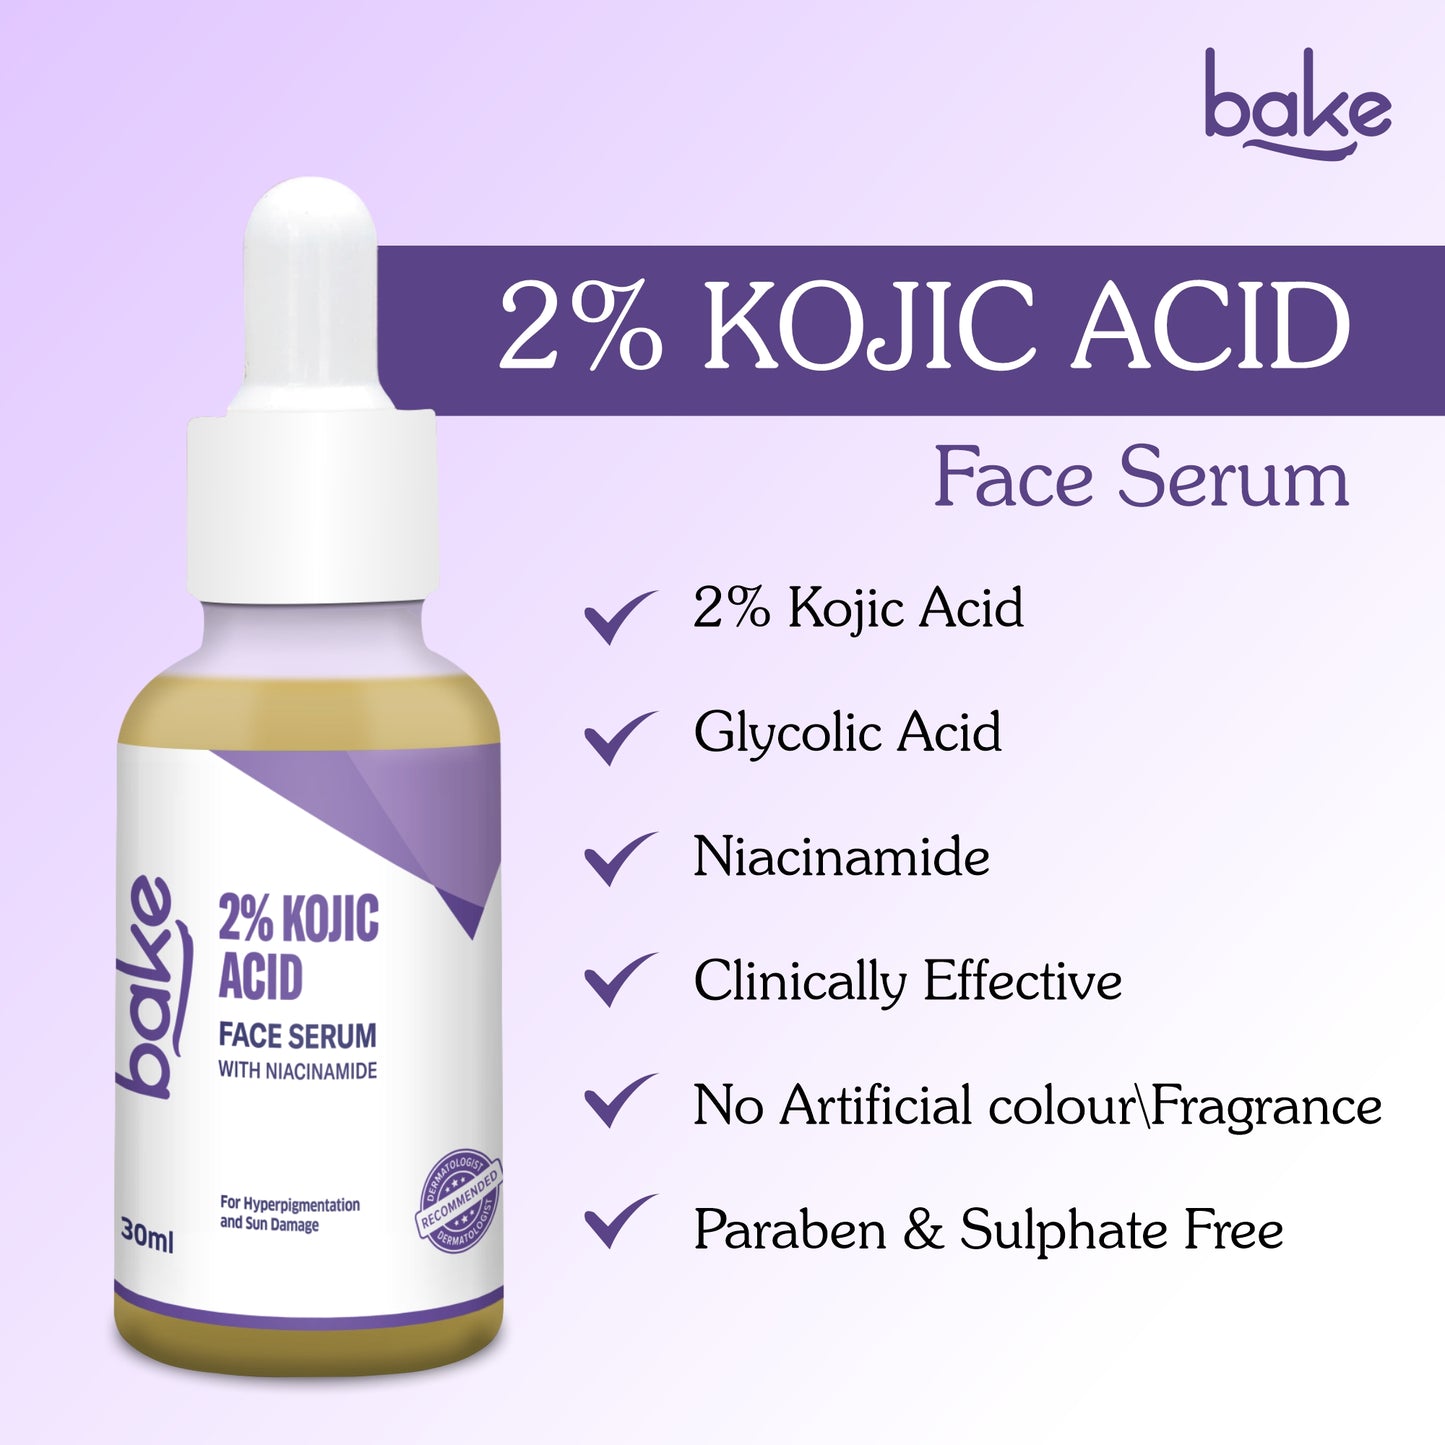 2% Koijc Acid Face Serum